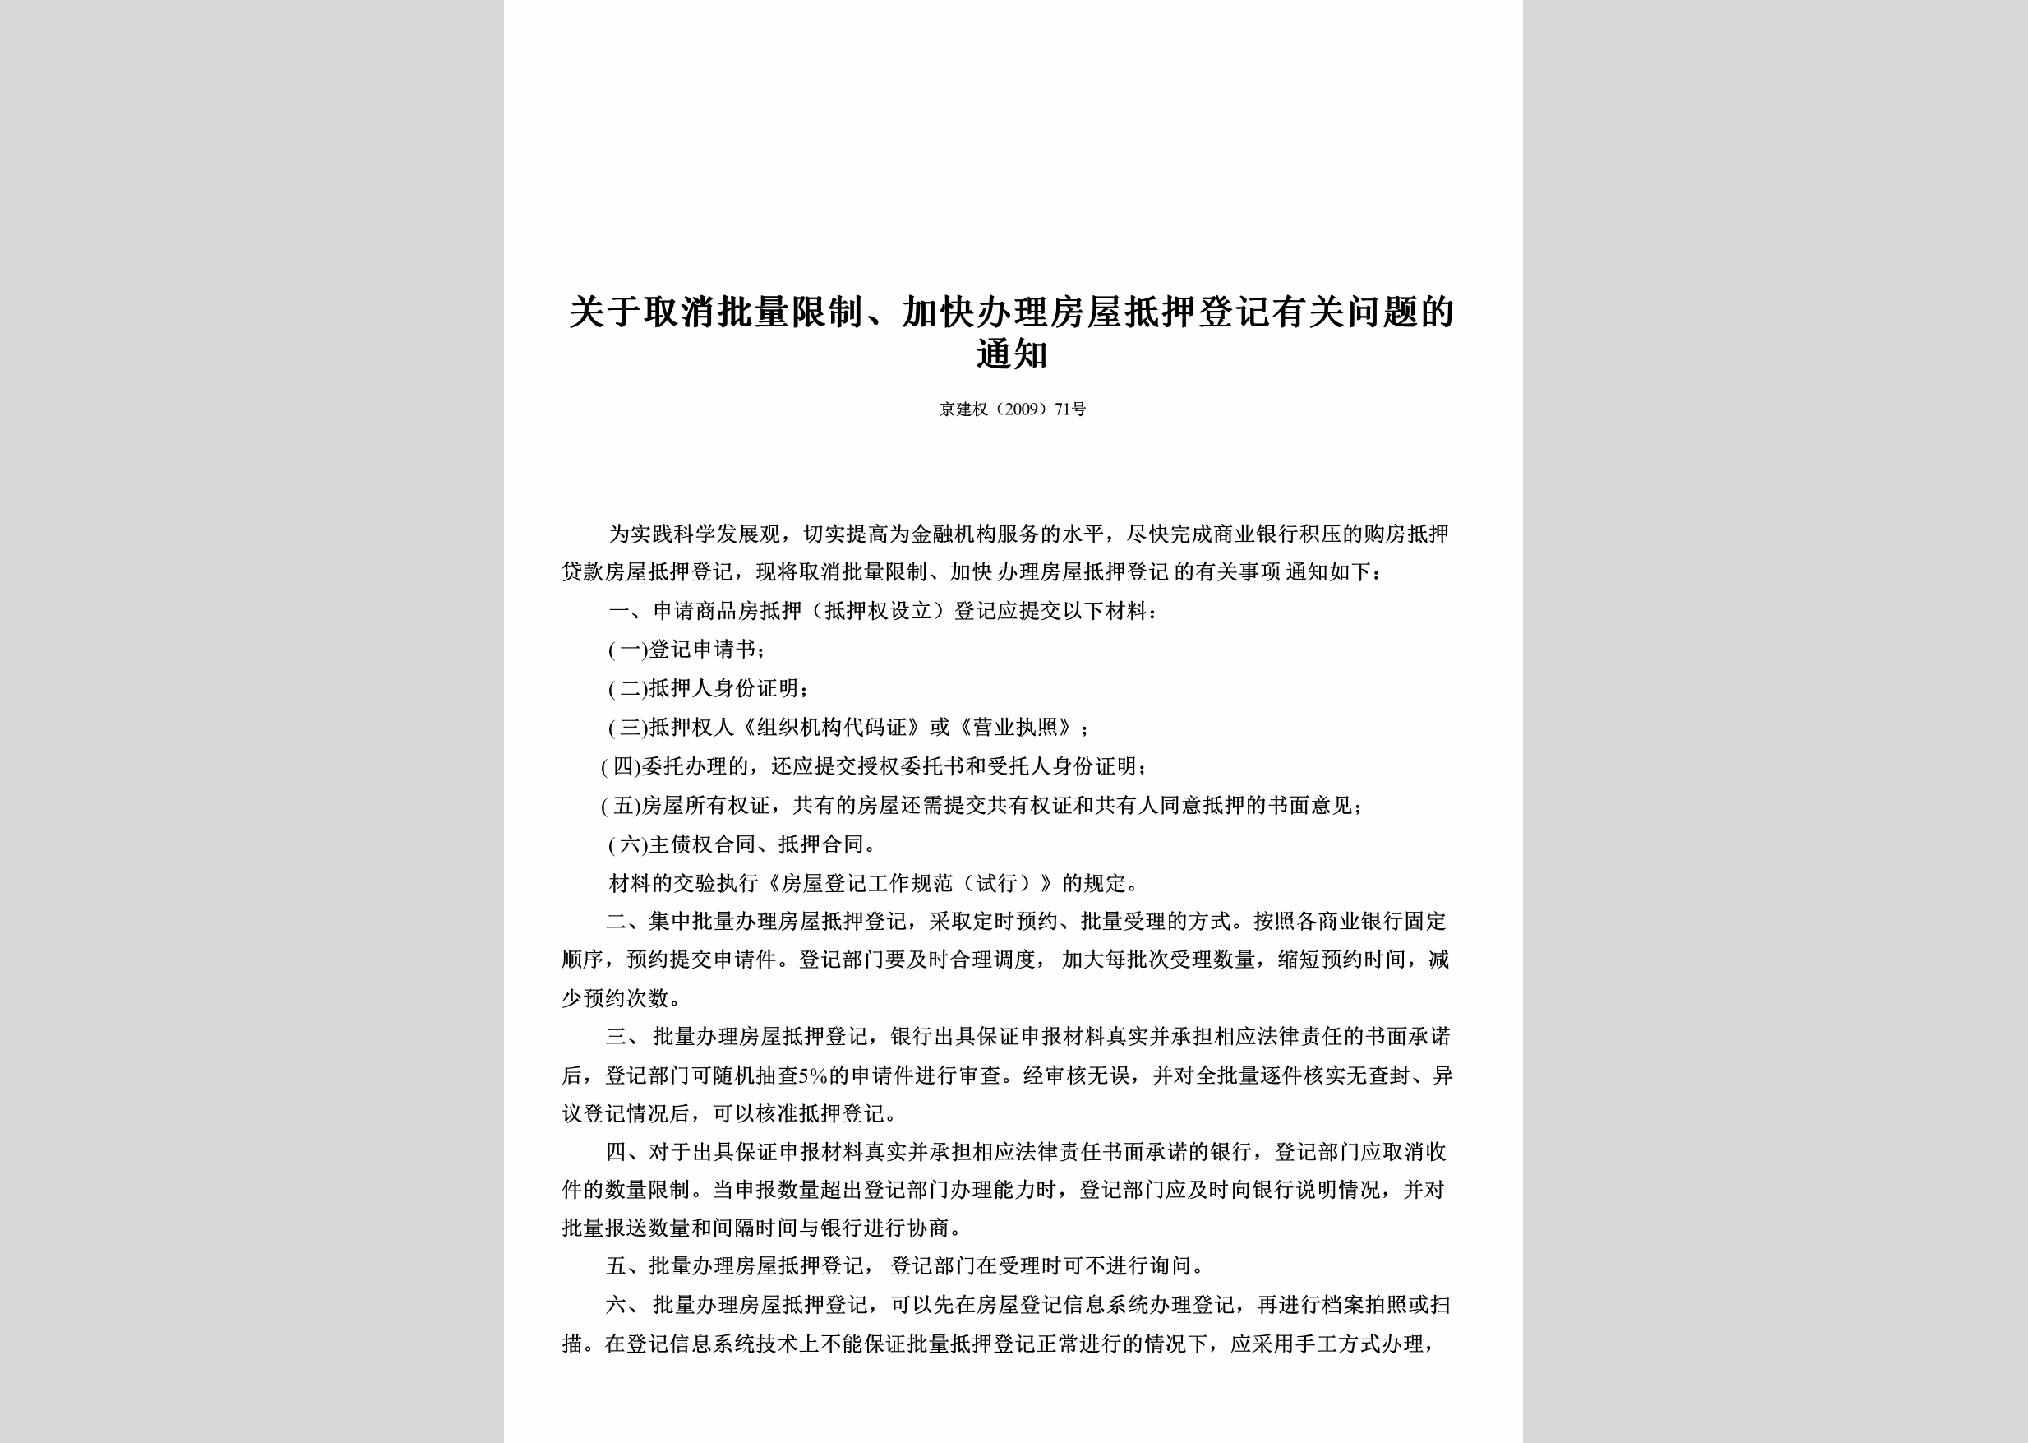 京建权[2009]71号：关于取消批量限制、加快办理房屋抵押登记有关问题的通知